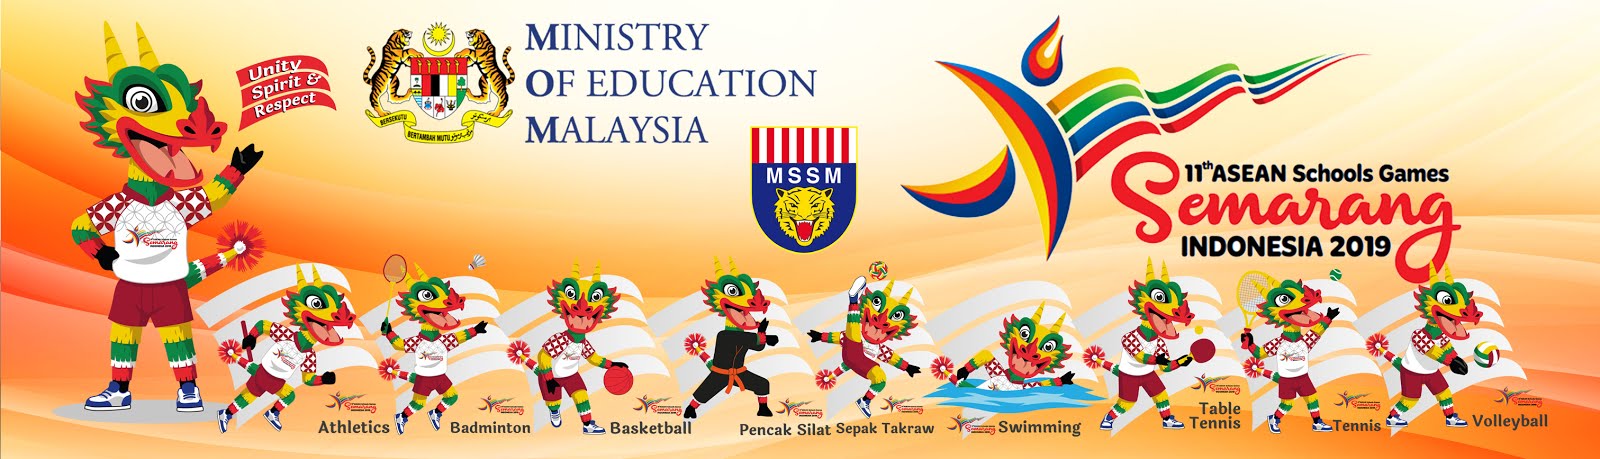 TEAM MSSM at ASEAN SCHOOL GAMES